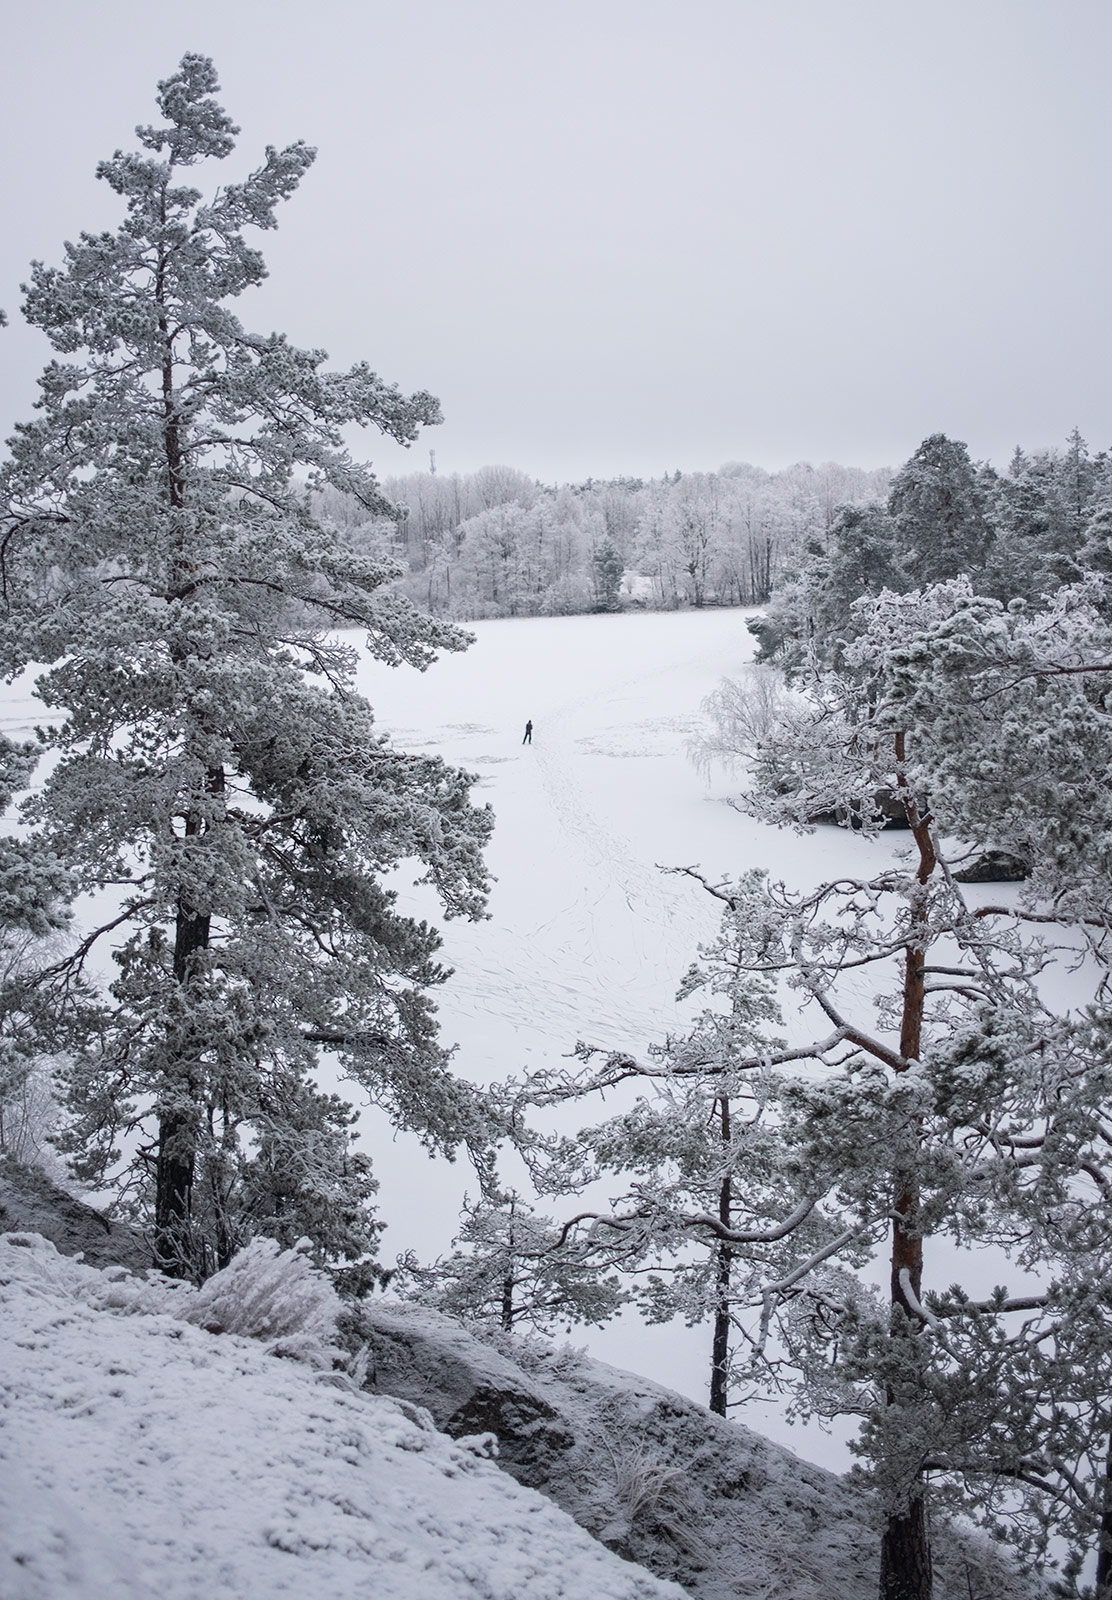 View of frozen lake through trees